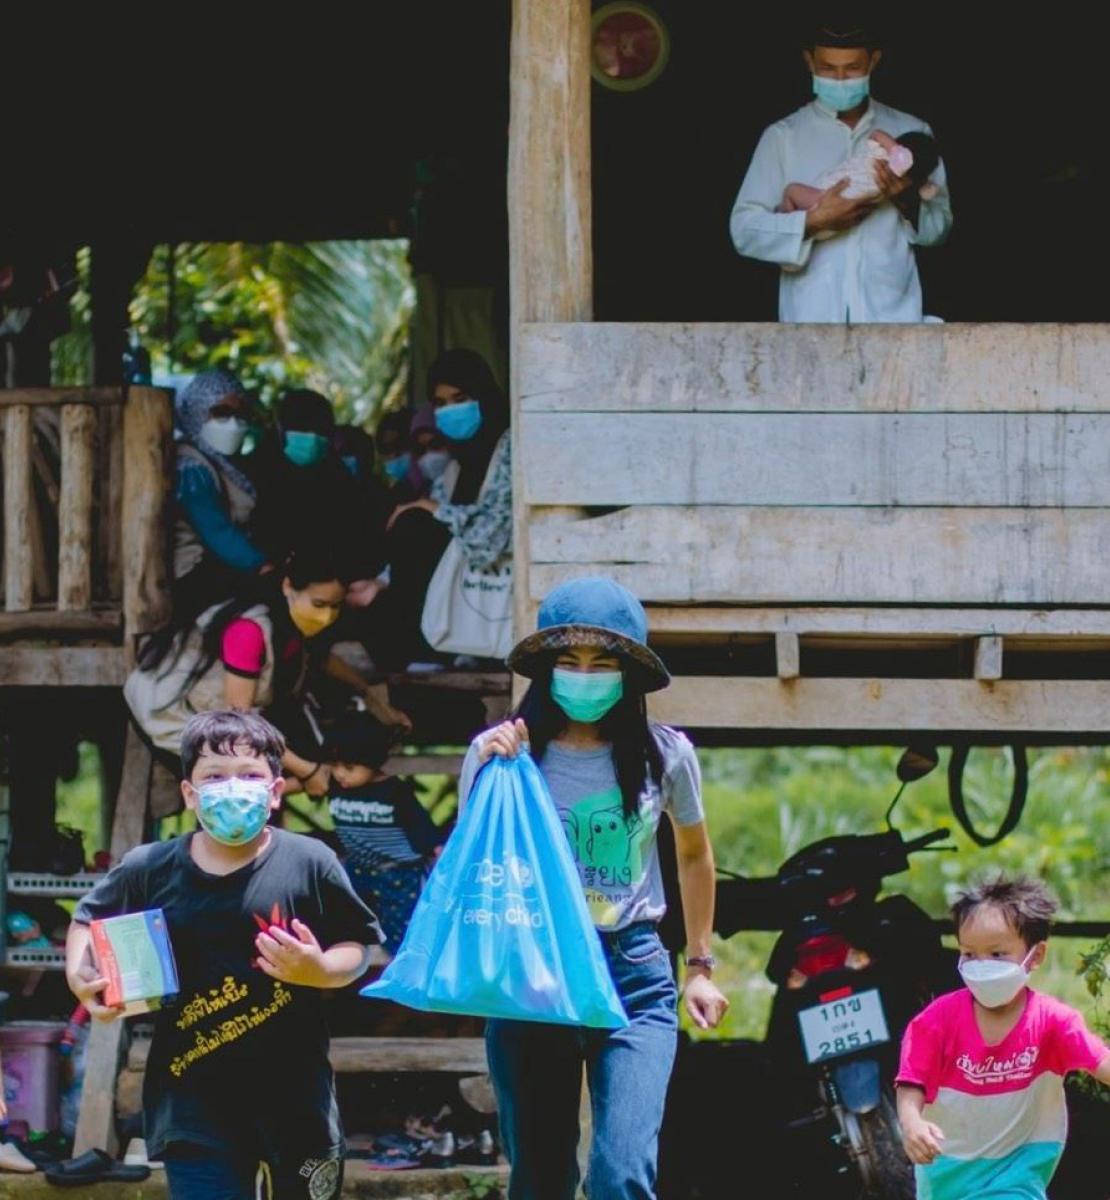 Les membres d'une famille, tous équipés d'un masque de protection respiratoire, sont assis sur la terrasse d'une maison en bois, tandis que plusieurs enfants portant également un masque marchent en direction de l'objectif en s'éloignent de la maison, divers objets distribués par l'UNICEF à la main.